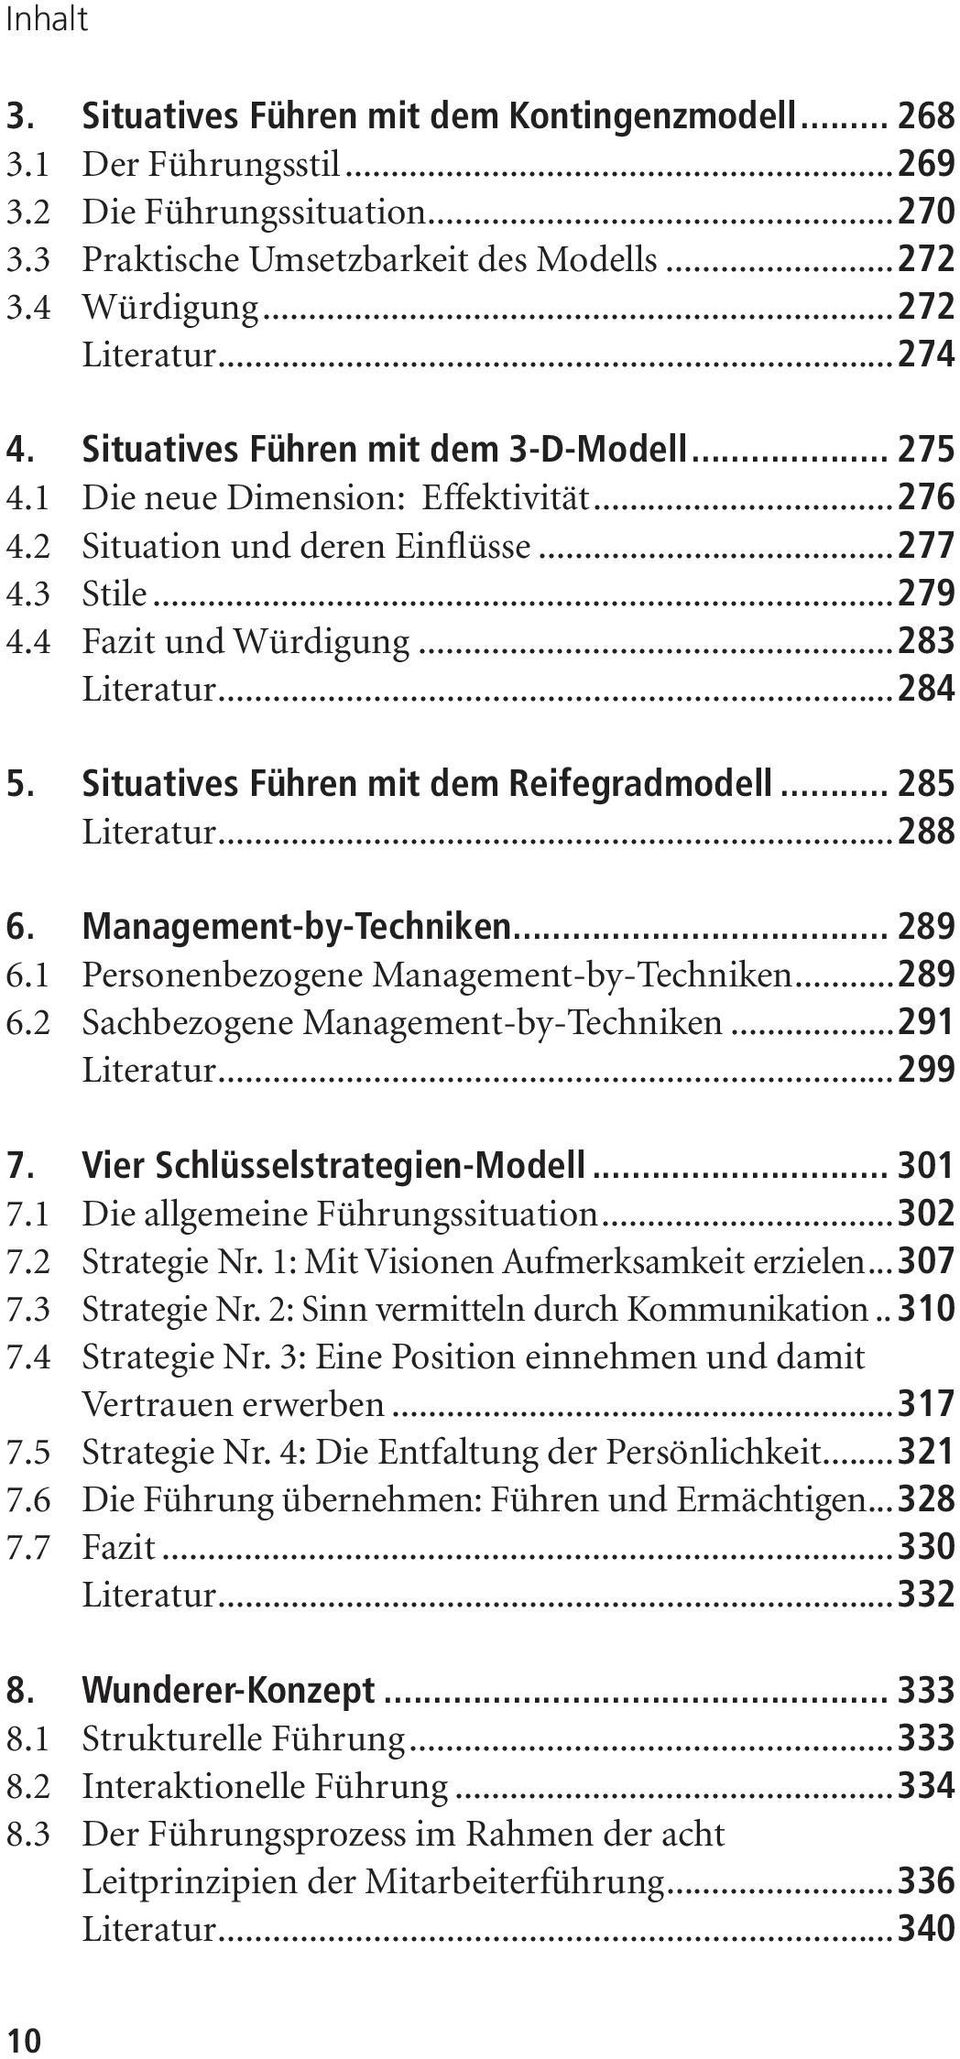 Situatives Führen mit dem Reifegradmodell... 285 Literatur...288 6. Management-by-Techniken... 289 6.1 Personenbezogene Management-by-Techniken...289 6.2 Sachbezogene Management-by-Techniken.